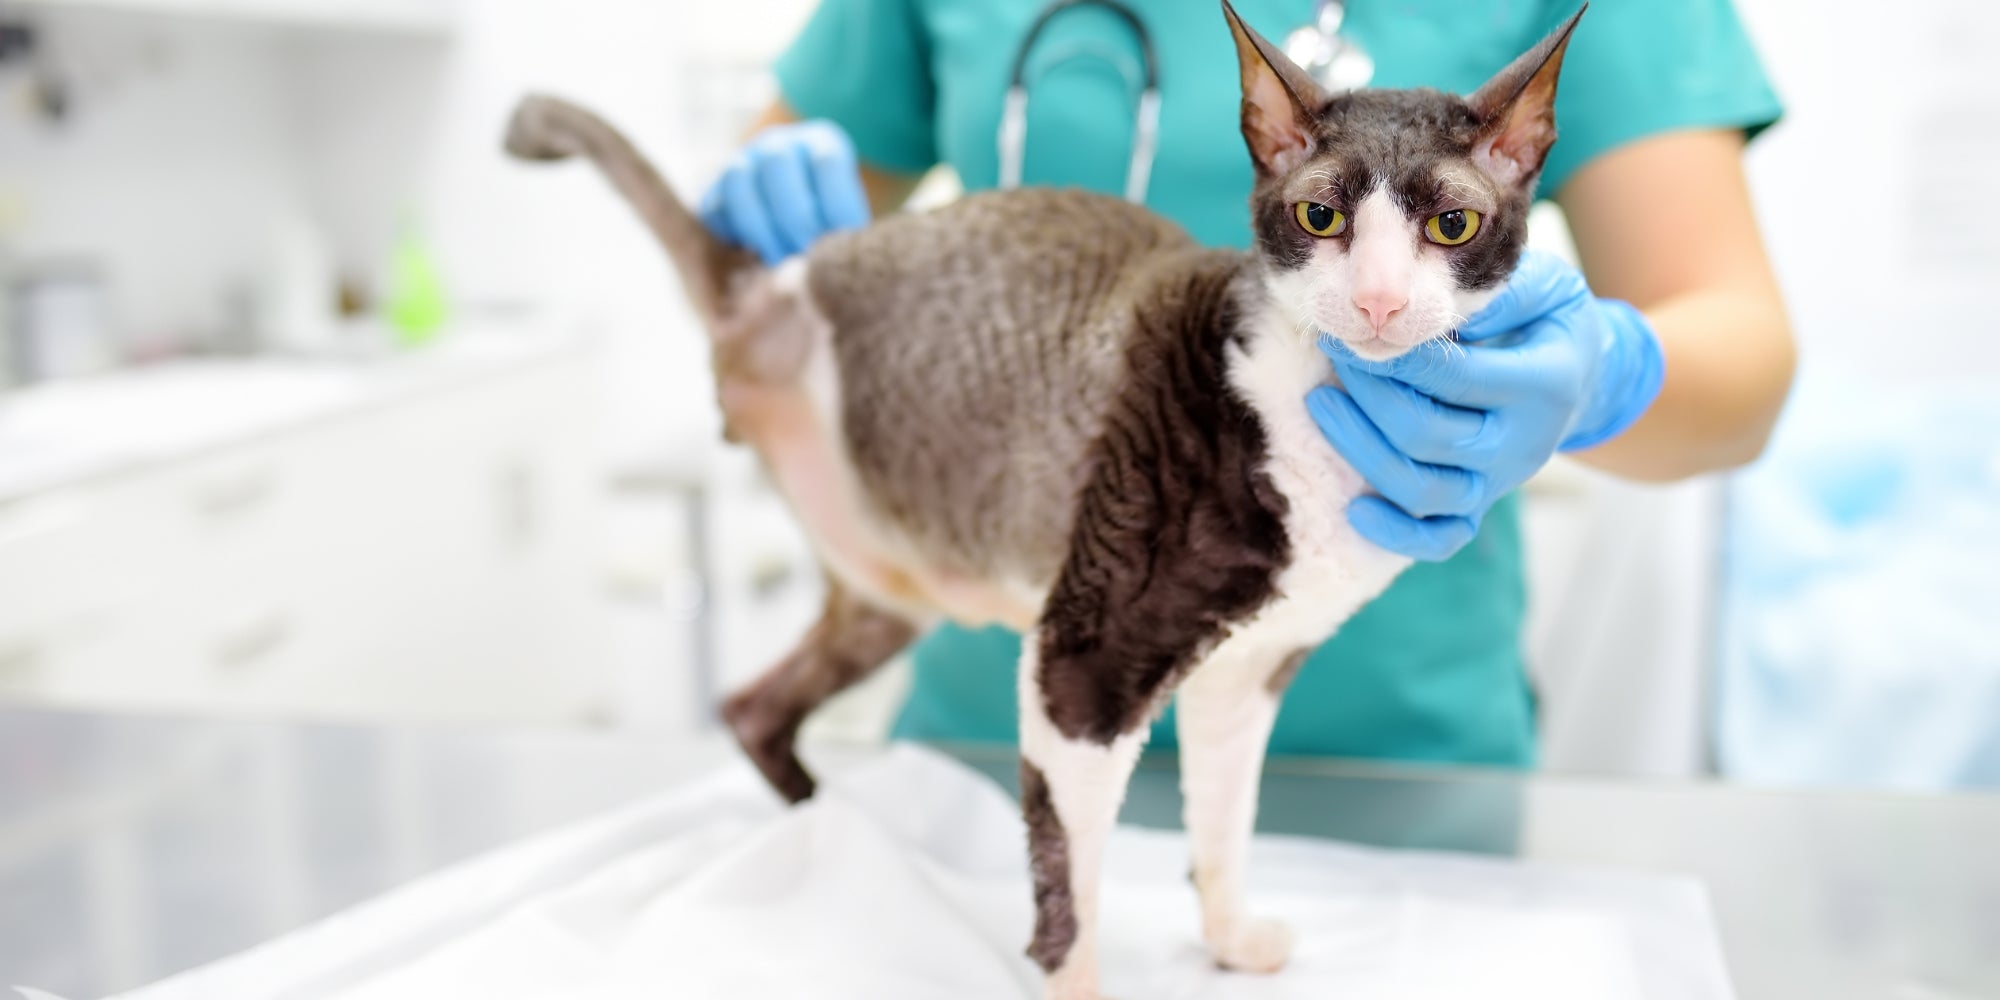 Un veterinario examina a un gato de raza Cornish Rex discapacitado en una clínica veterinaria. El gato solo tiene tres patas.